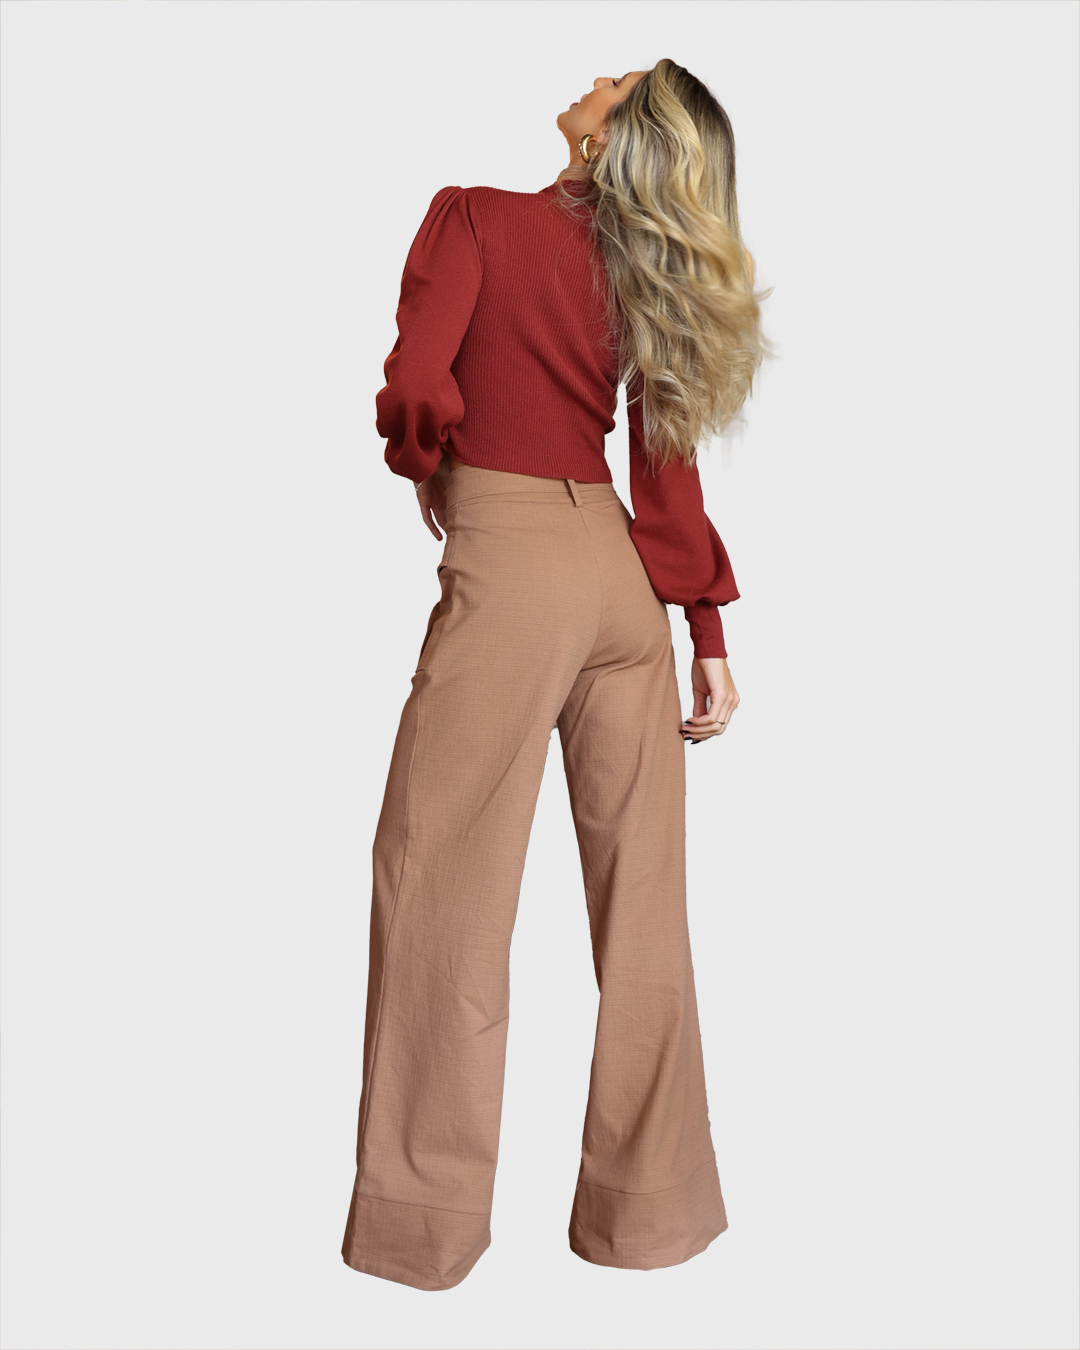 Dot Clothing - Calça Dot Clothing Pantalona com Bolso Marrom - 1988MARROM